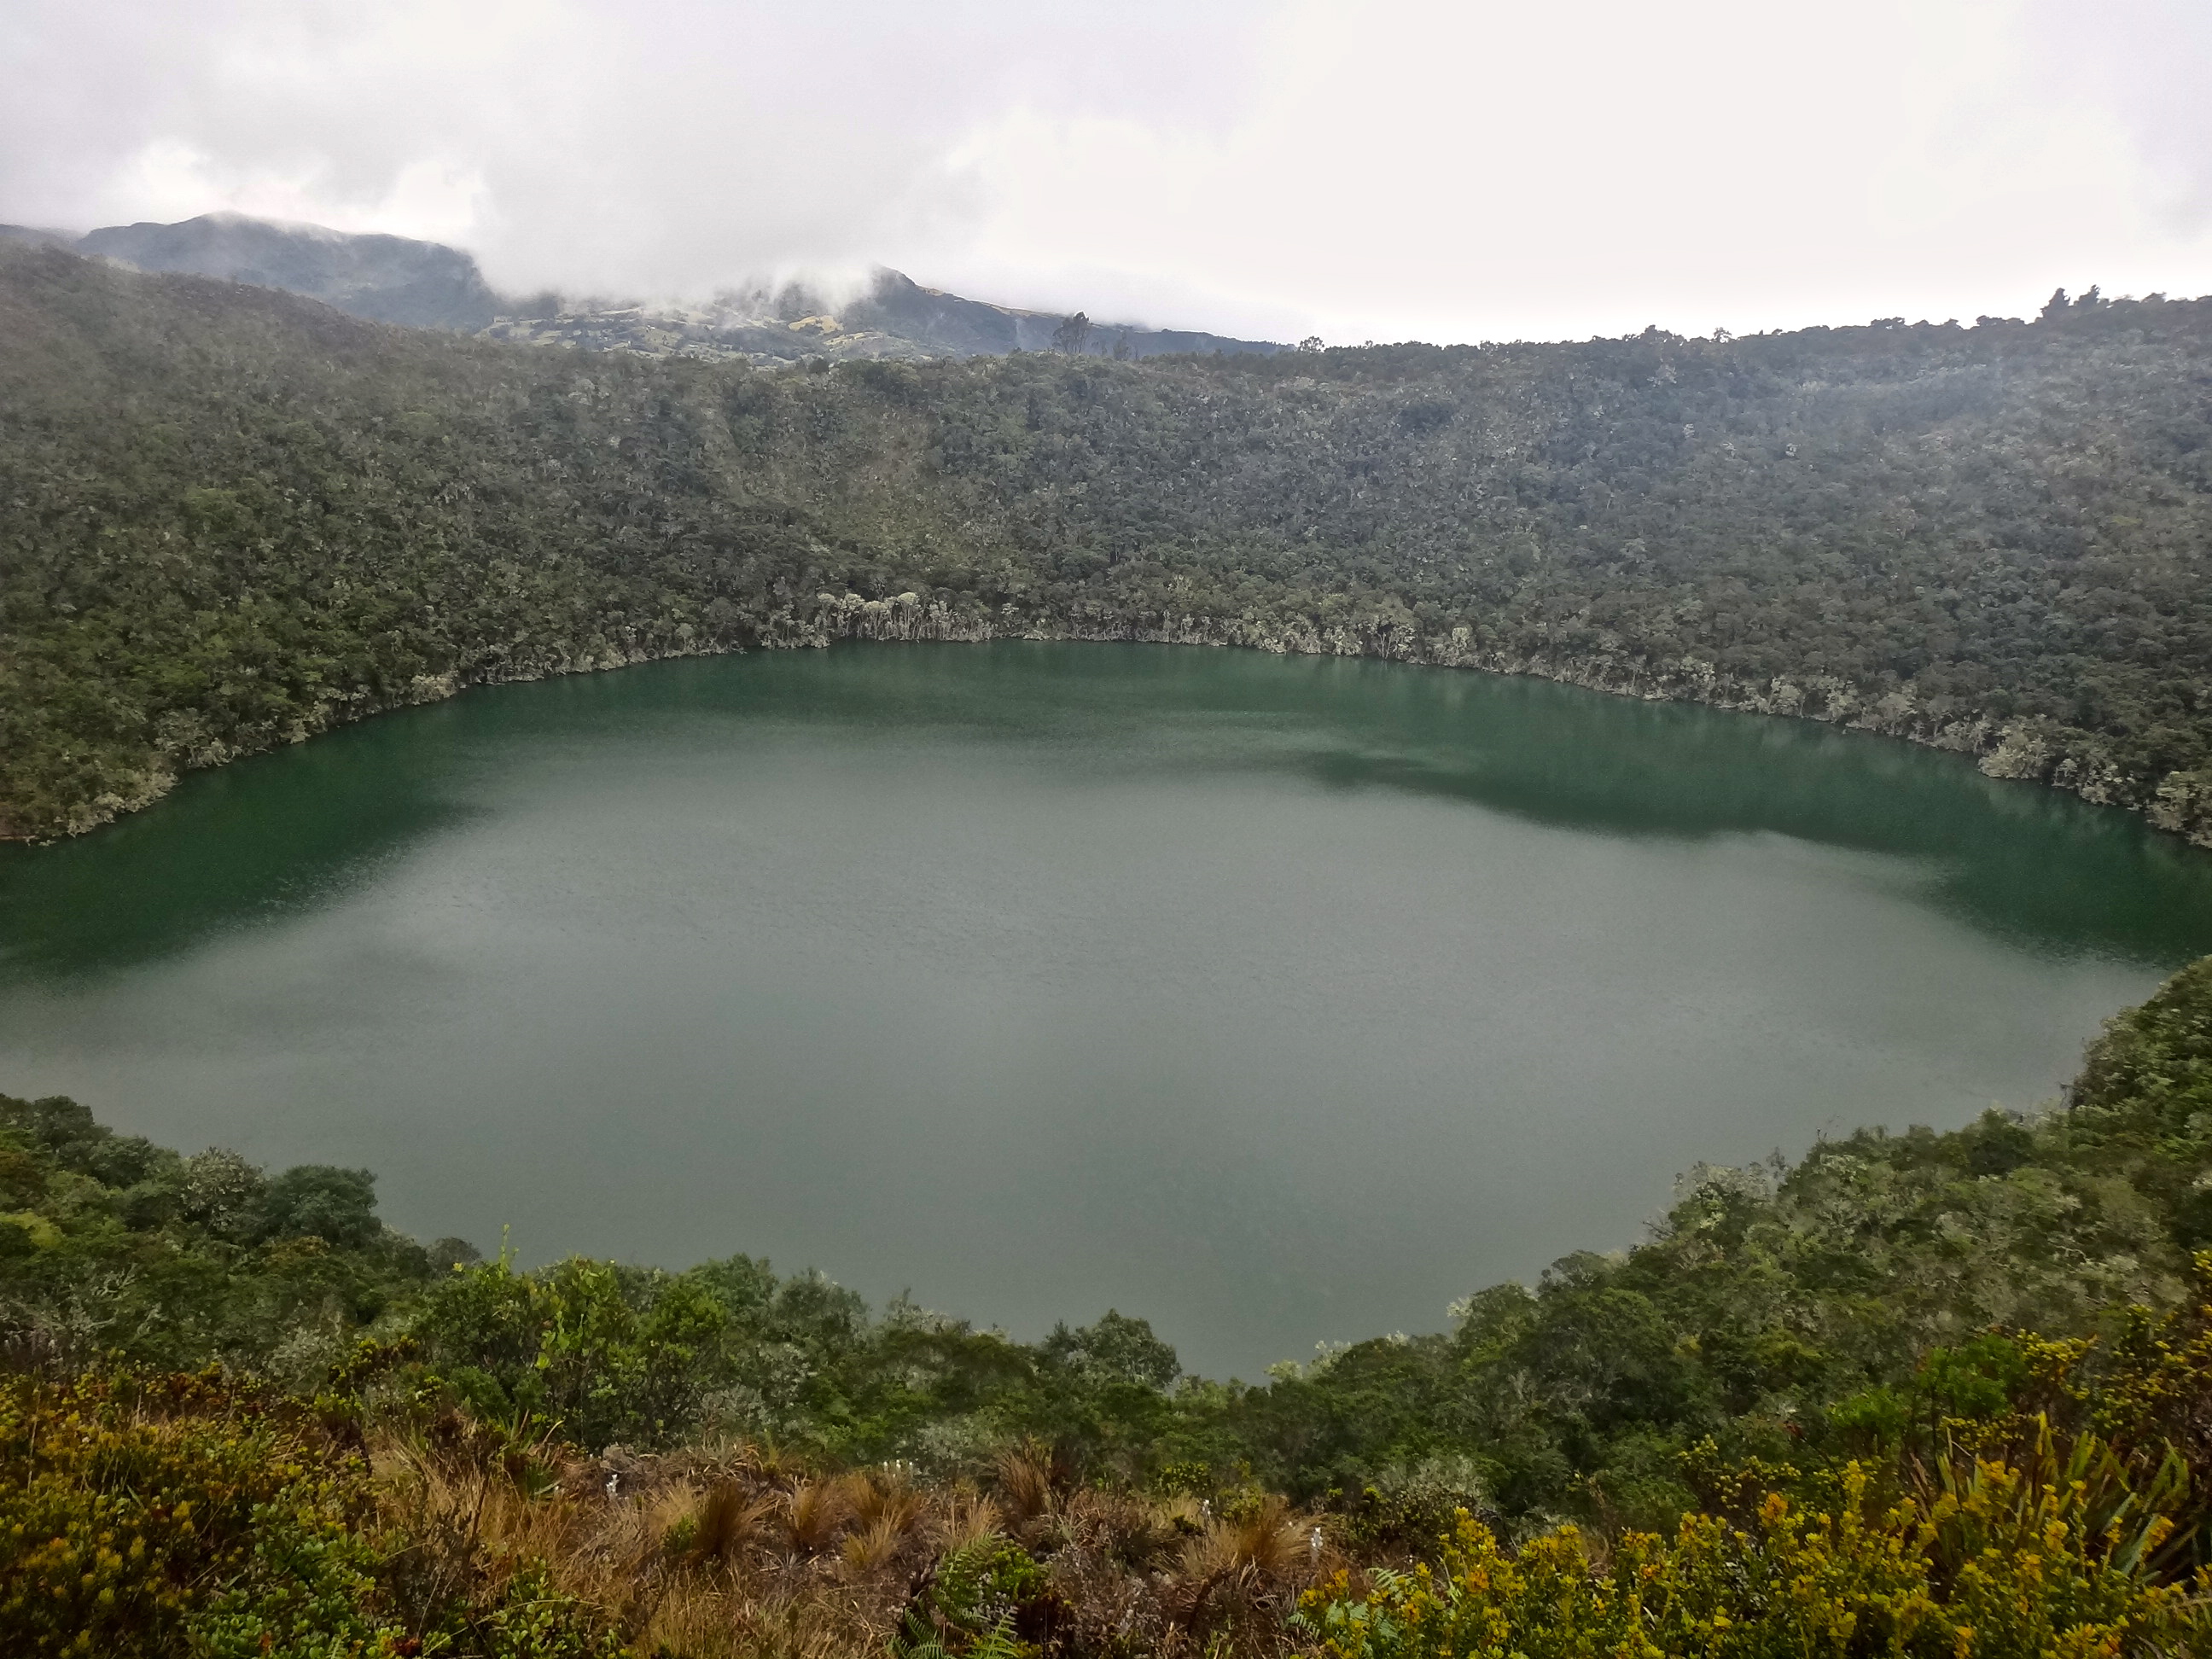 A Guatavita-tó, ami állítólag az El Dorado volt.